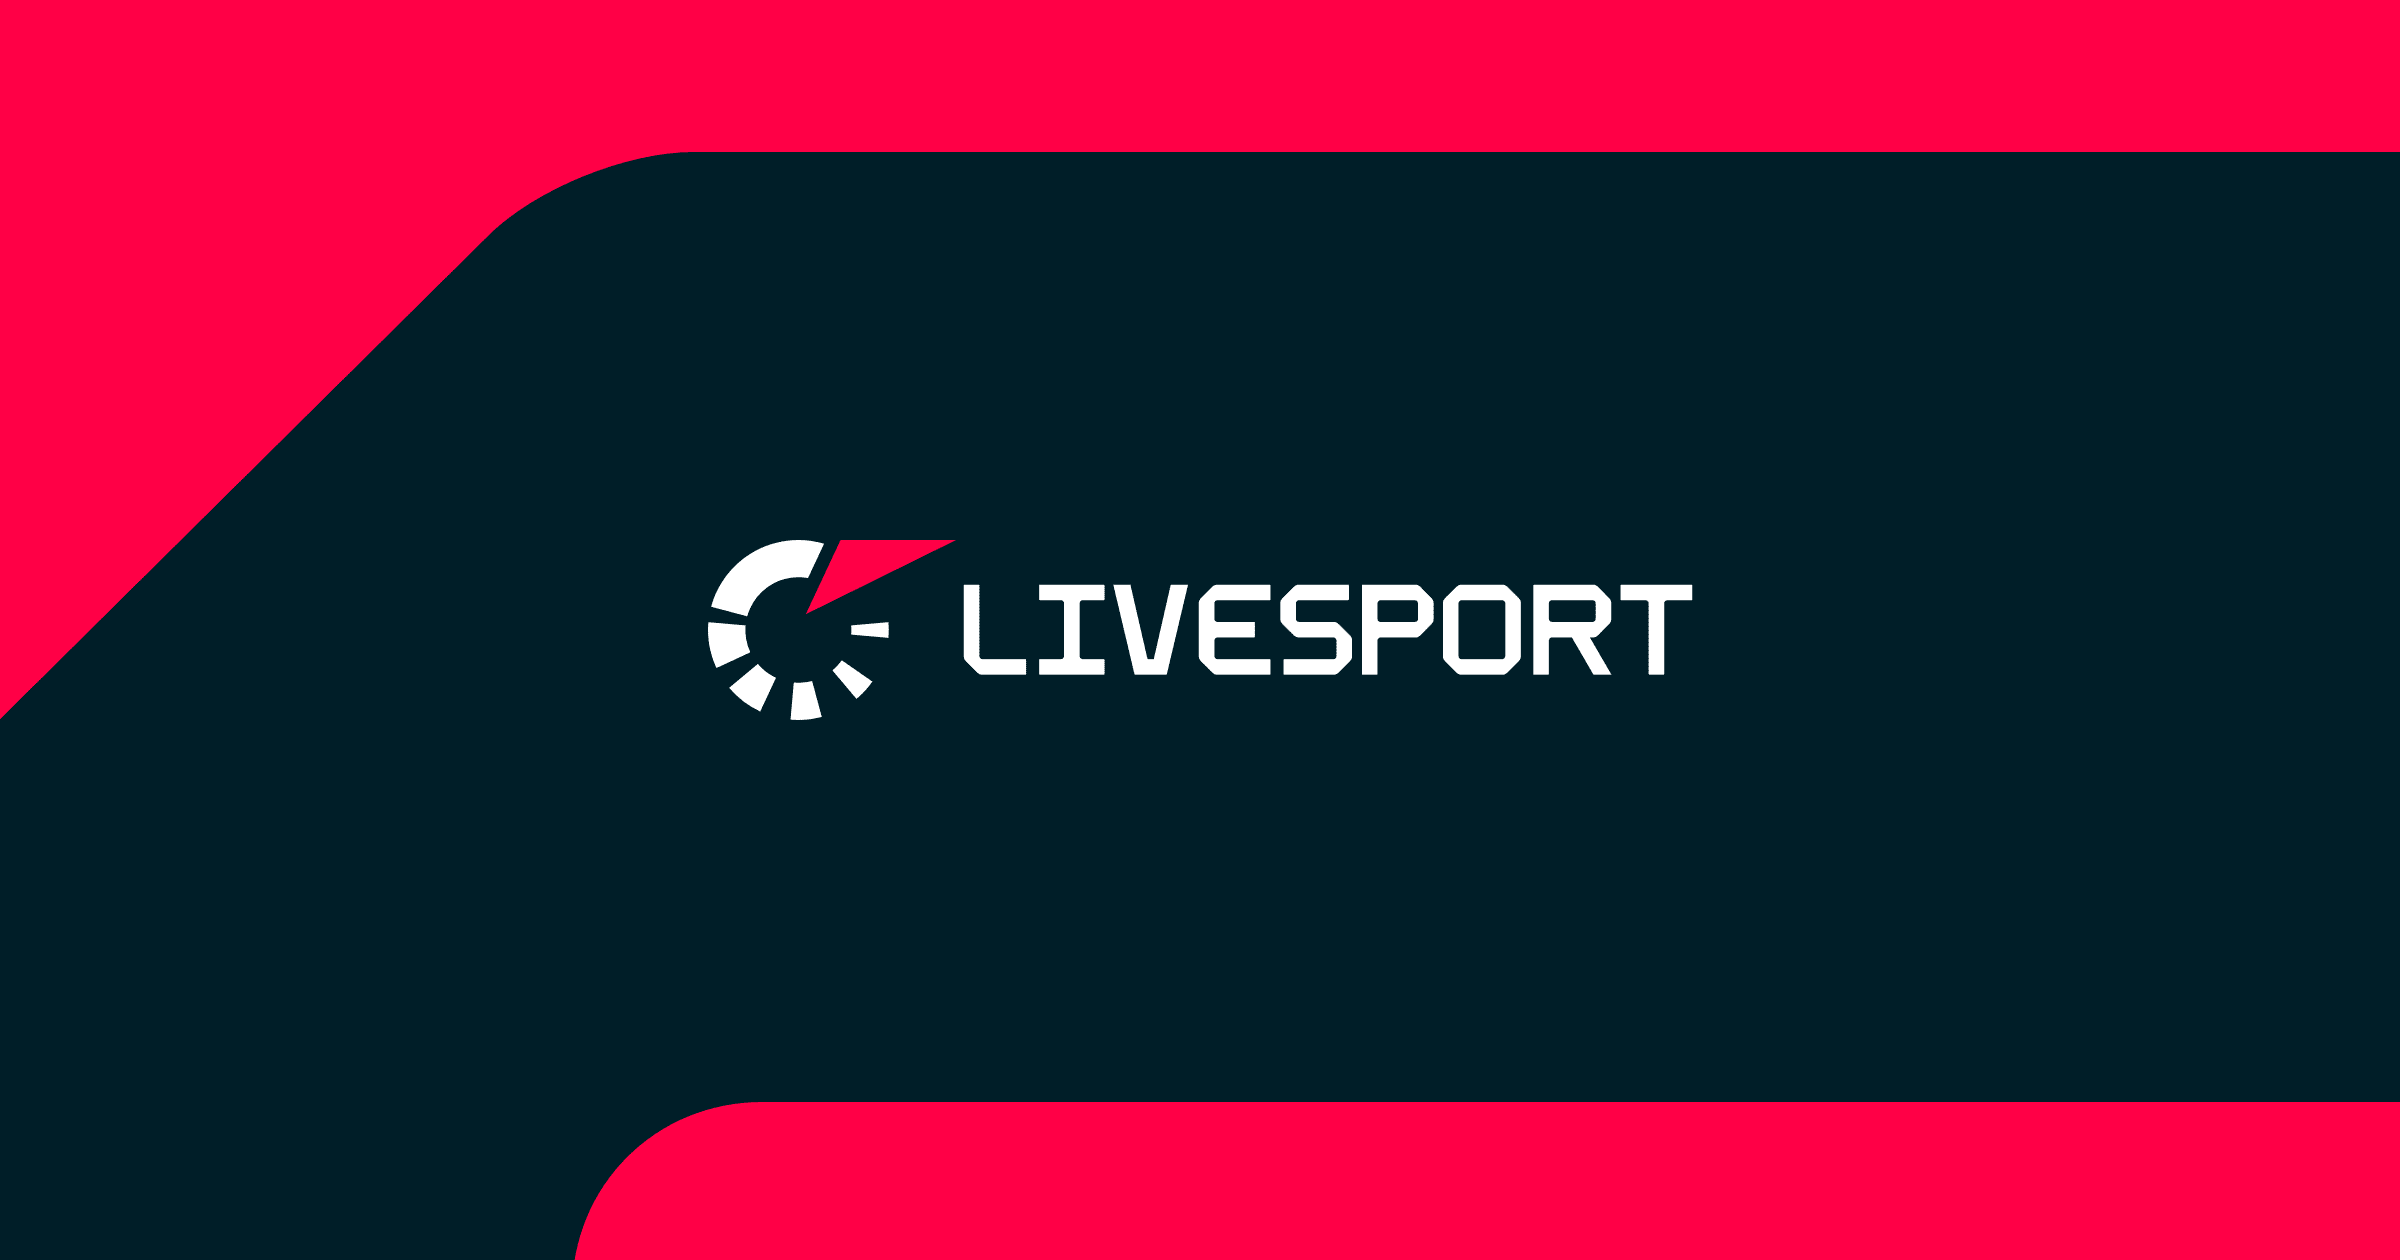 Livesport.cz hokej online, hokejové live výsledky, livescore